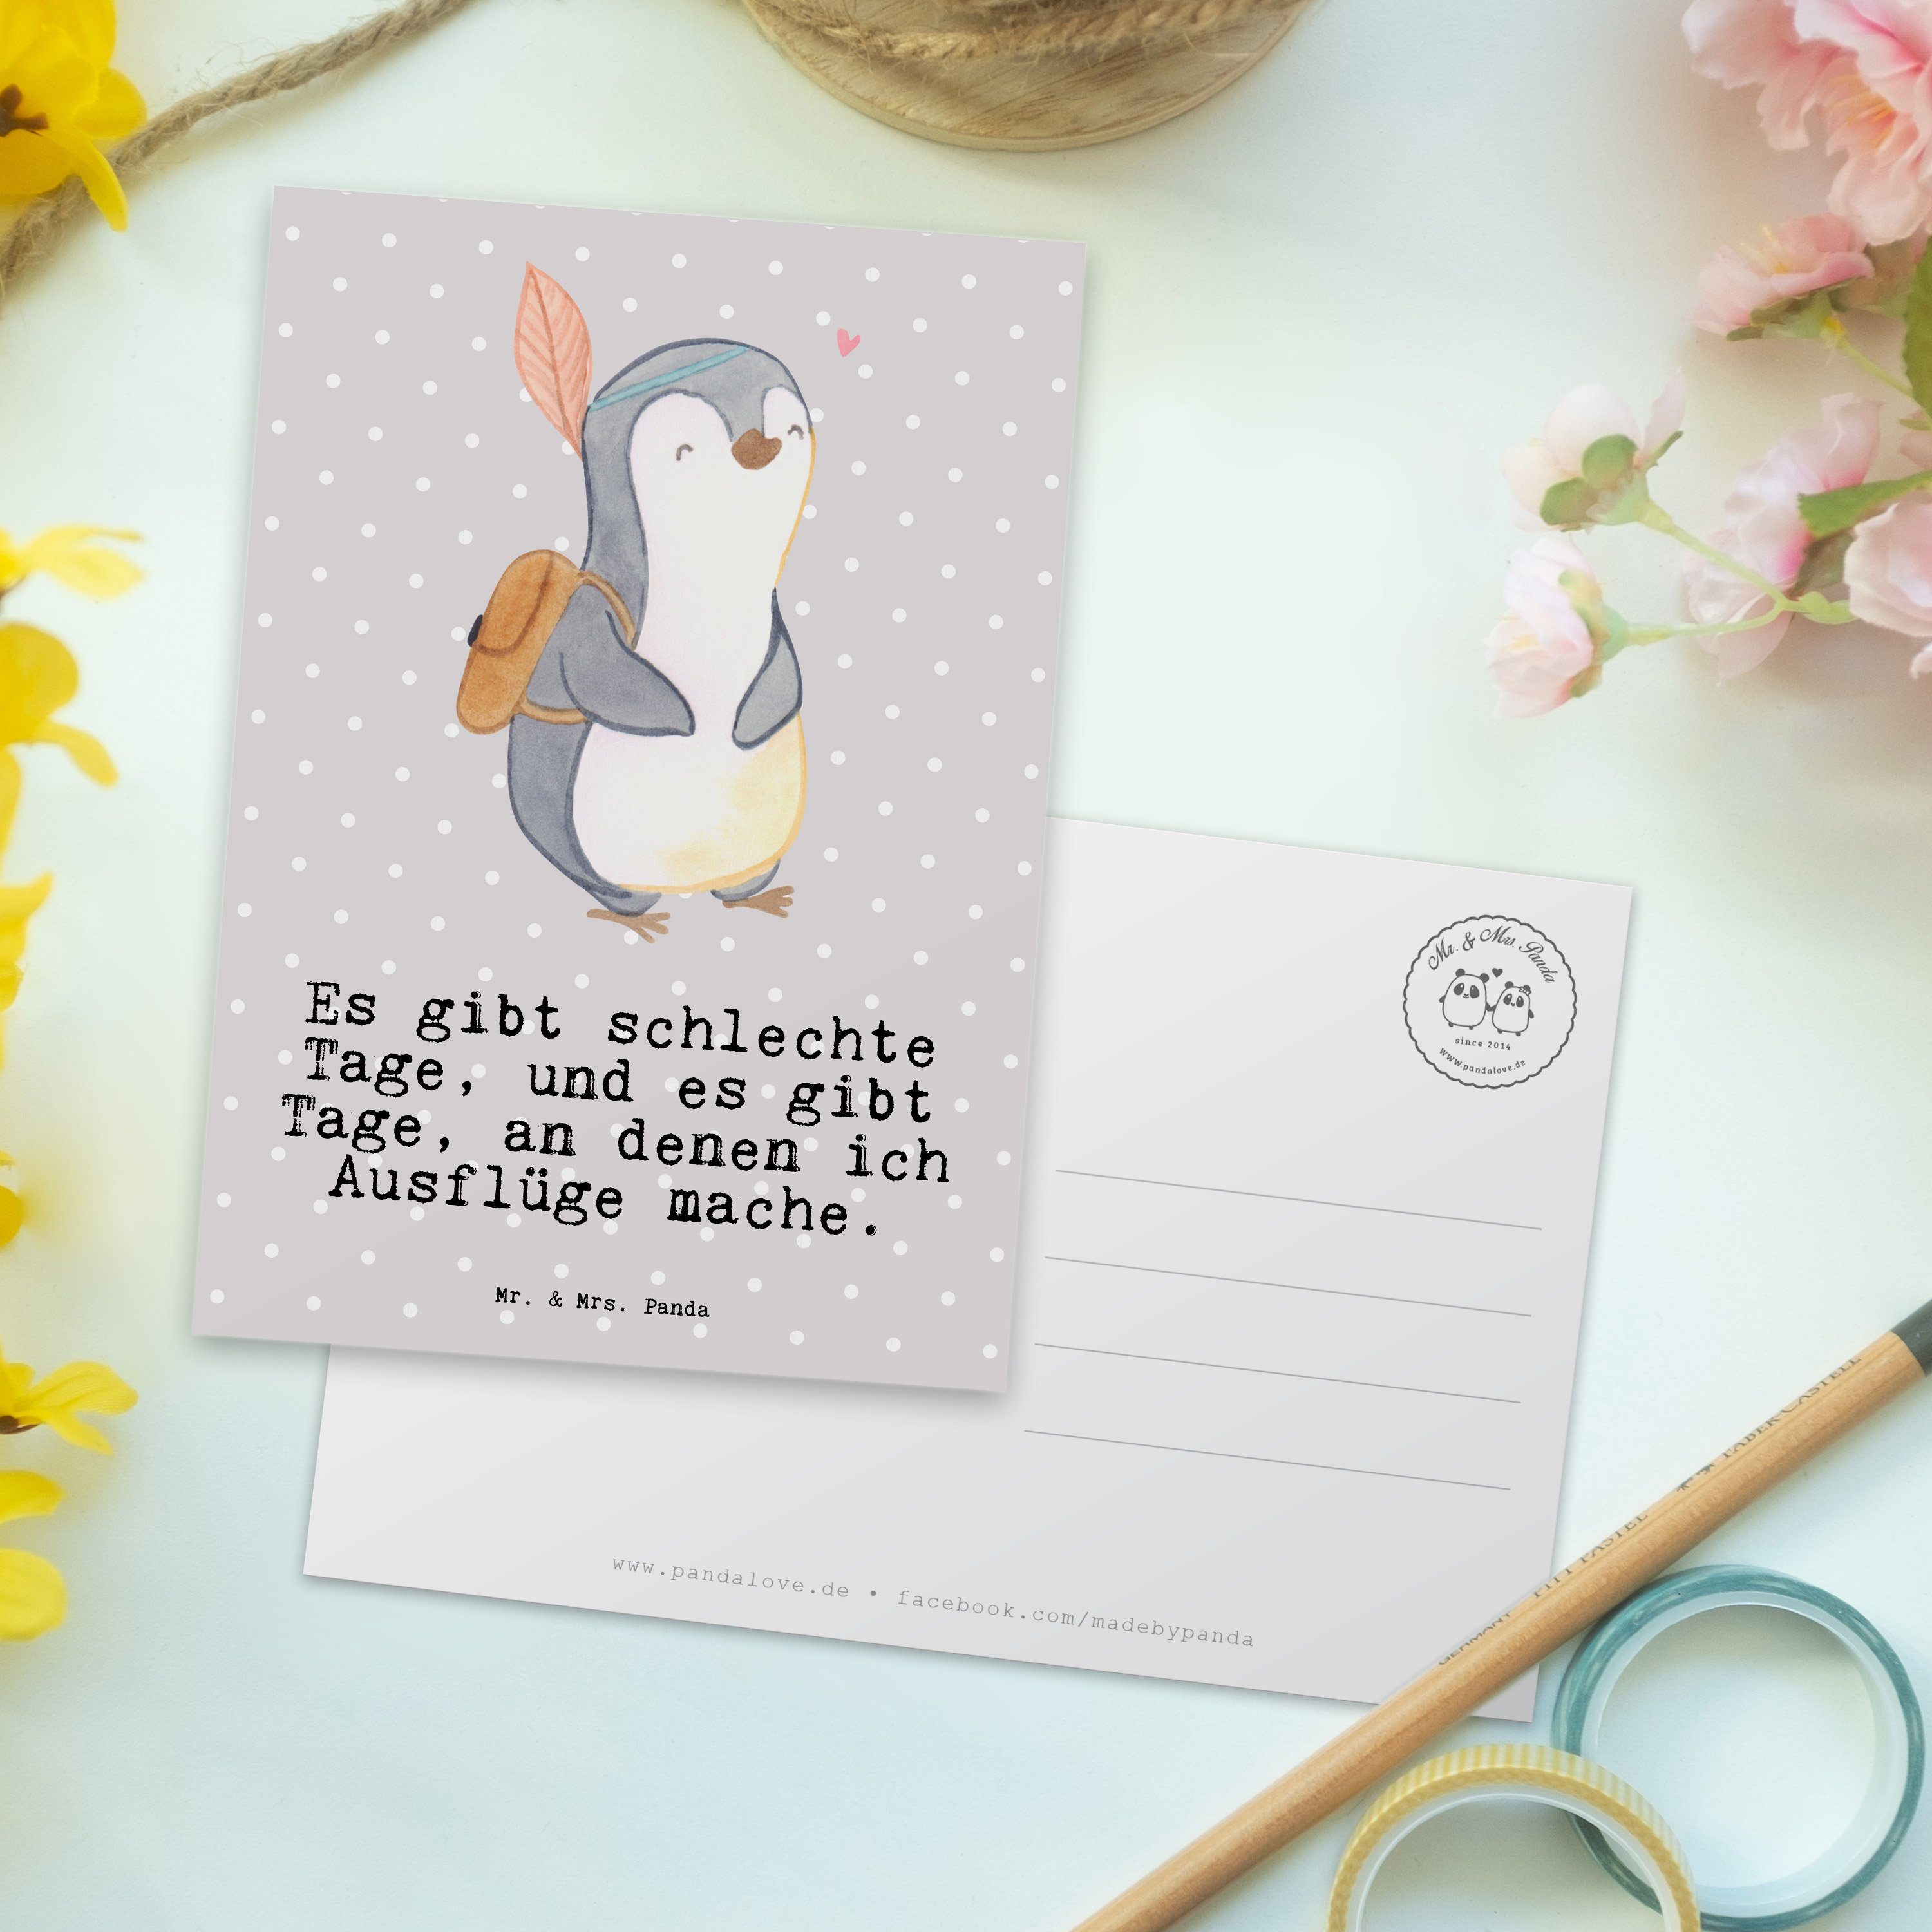 Grau Pinguin Sp Mr. Ausflug Mrs. - & - Postkarte Geschenk, Panda Tage reisen, Pastell Einladung,